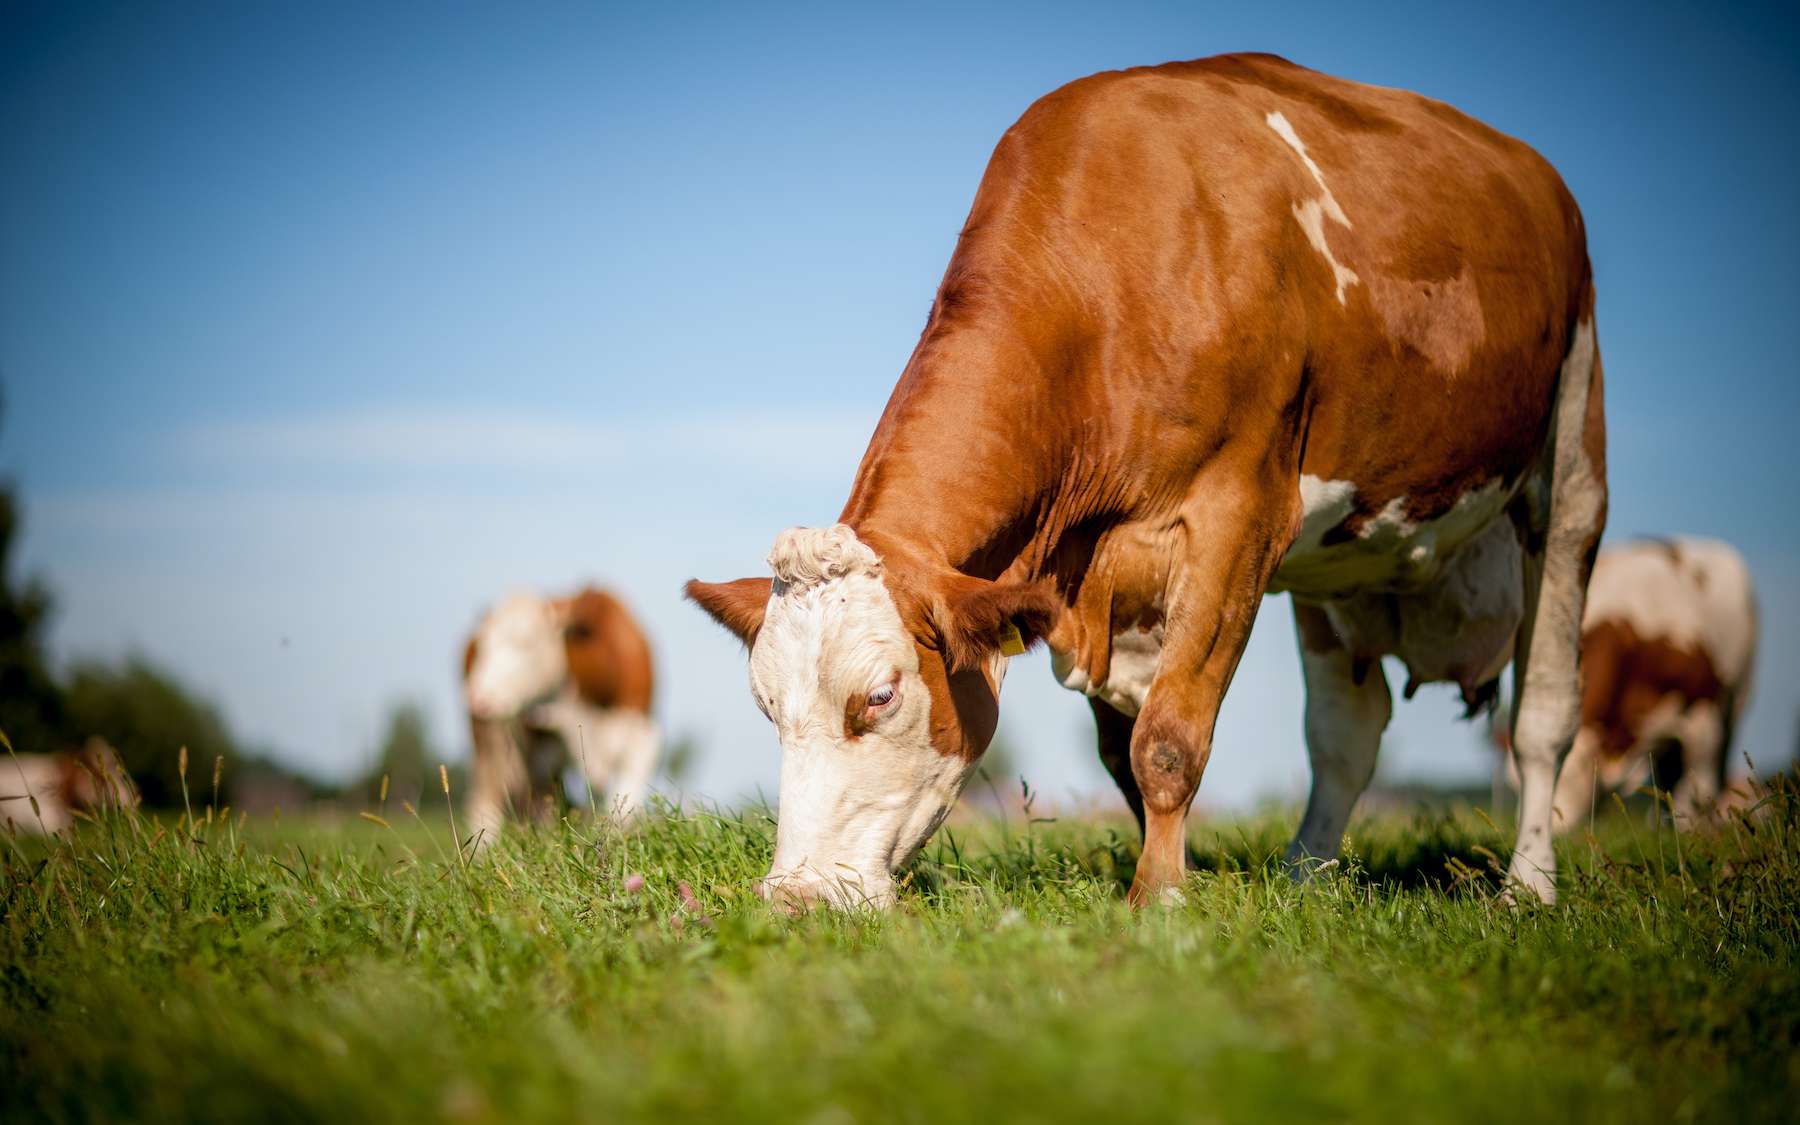 Les ruminants sont incapables de trier leur nourriture. © teamfoto, Adobe Stock